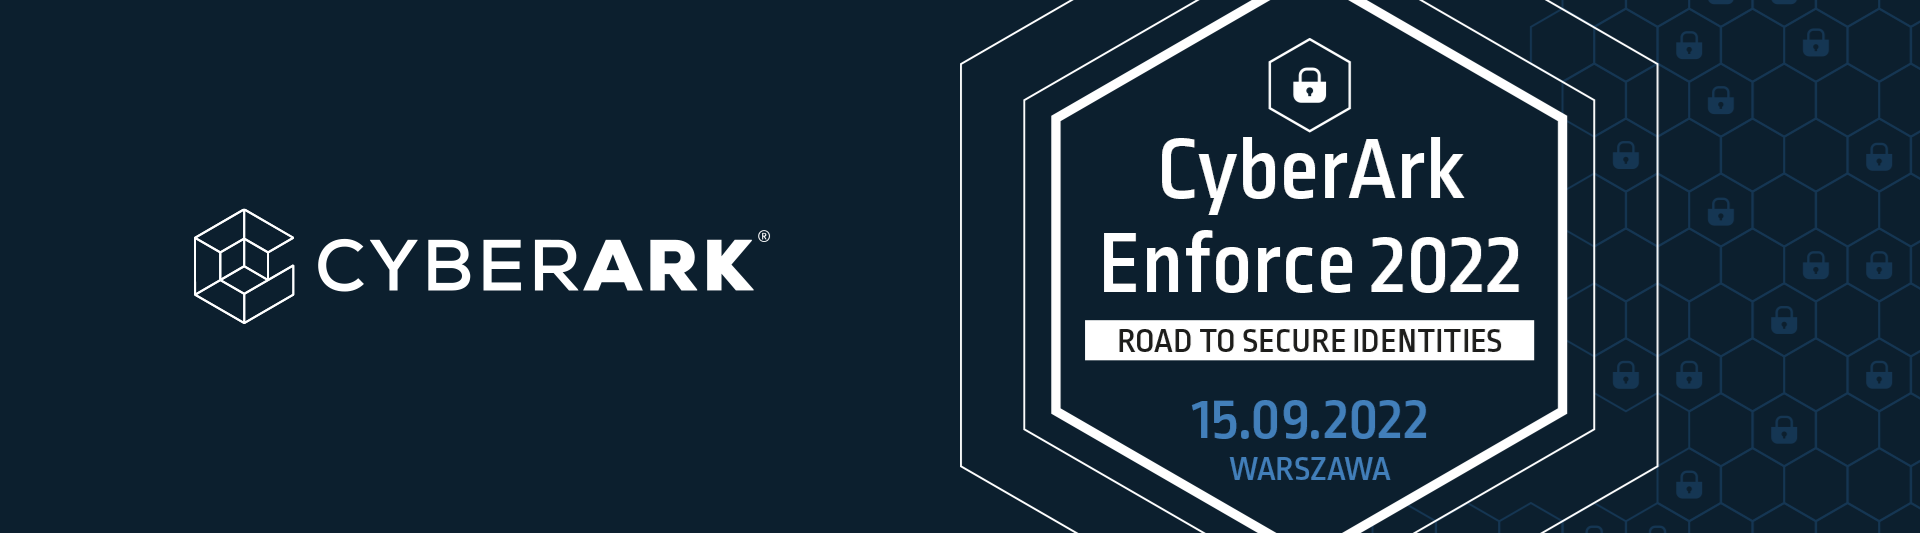 CyberArk Enforce 2022